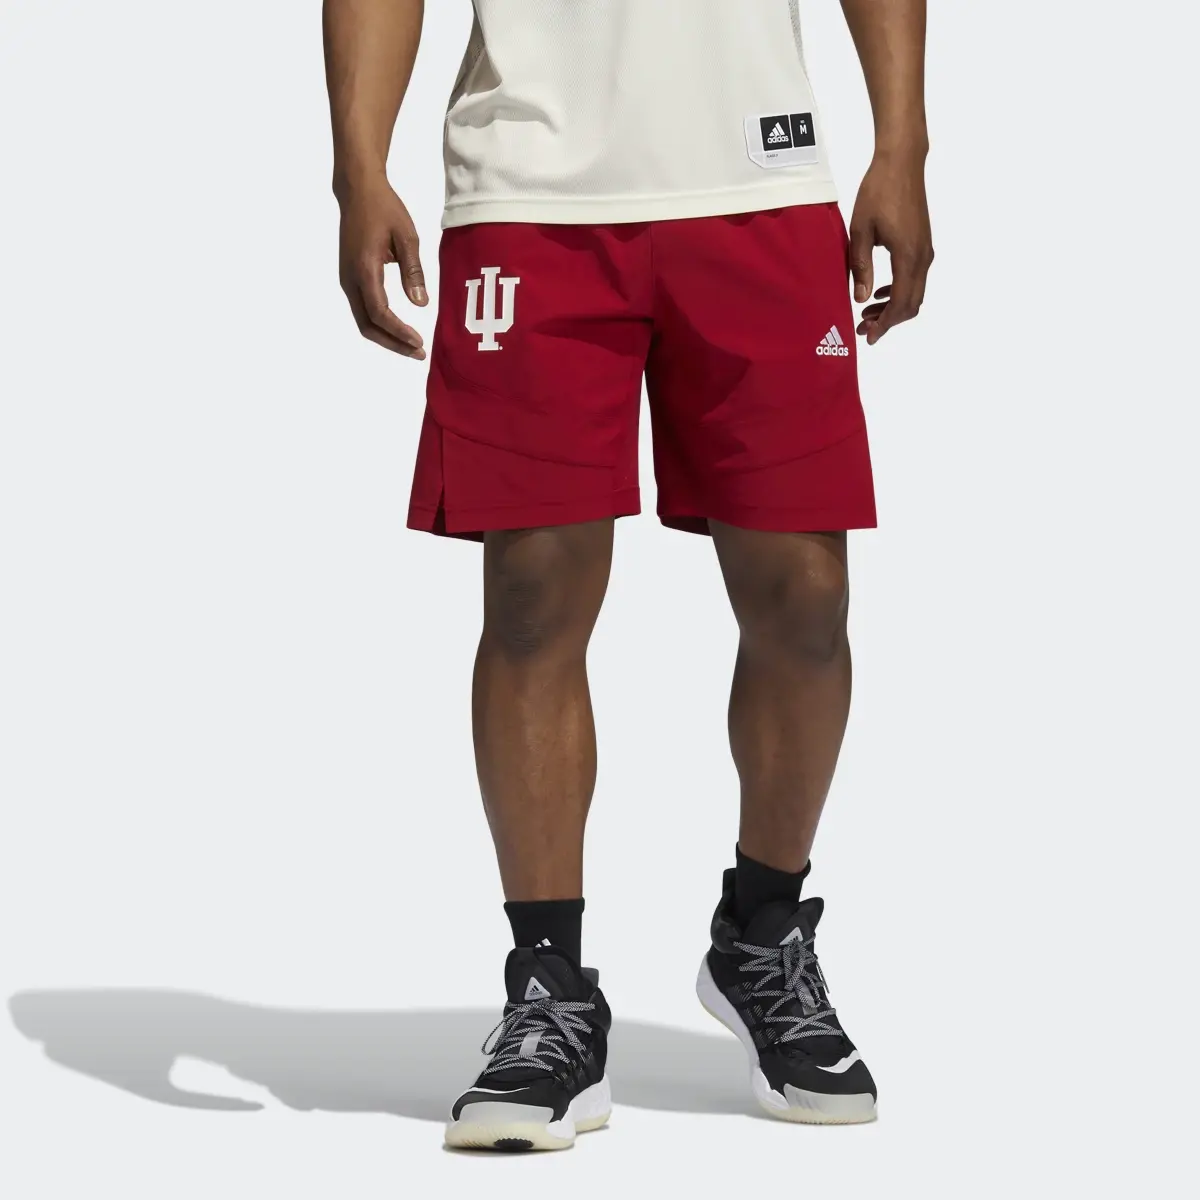 Adidas Hoosiers NCAA Swingman Shorts. 1